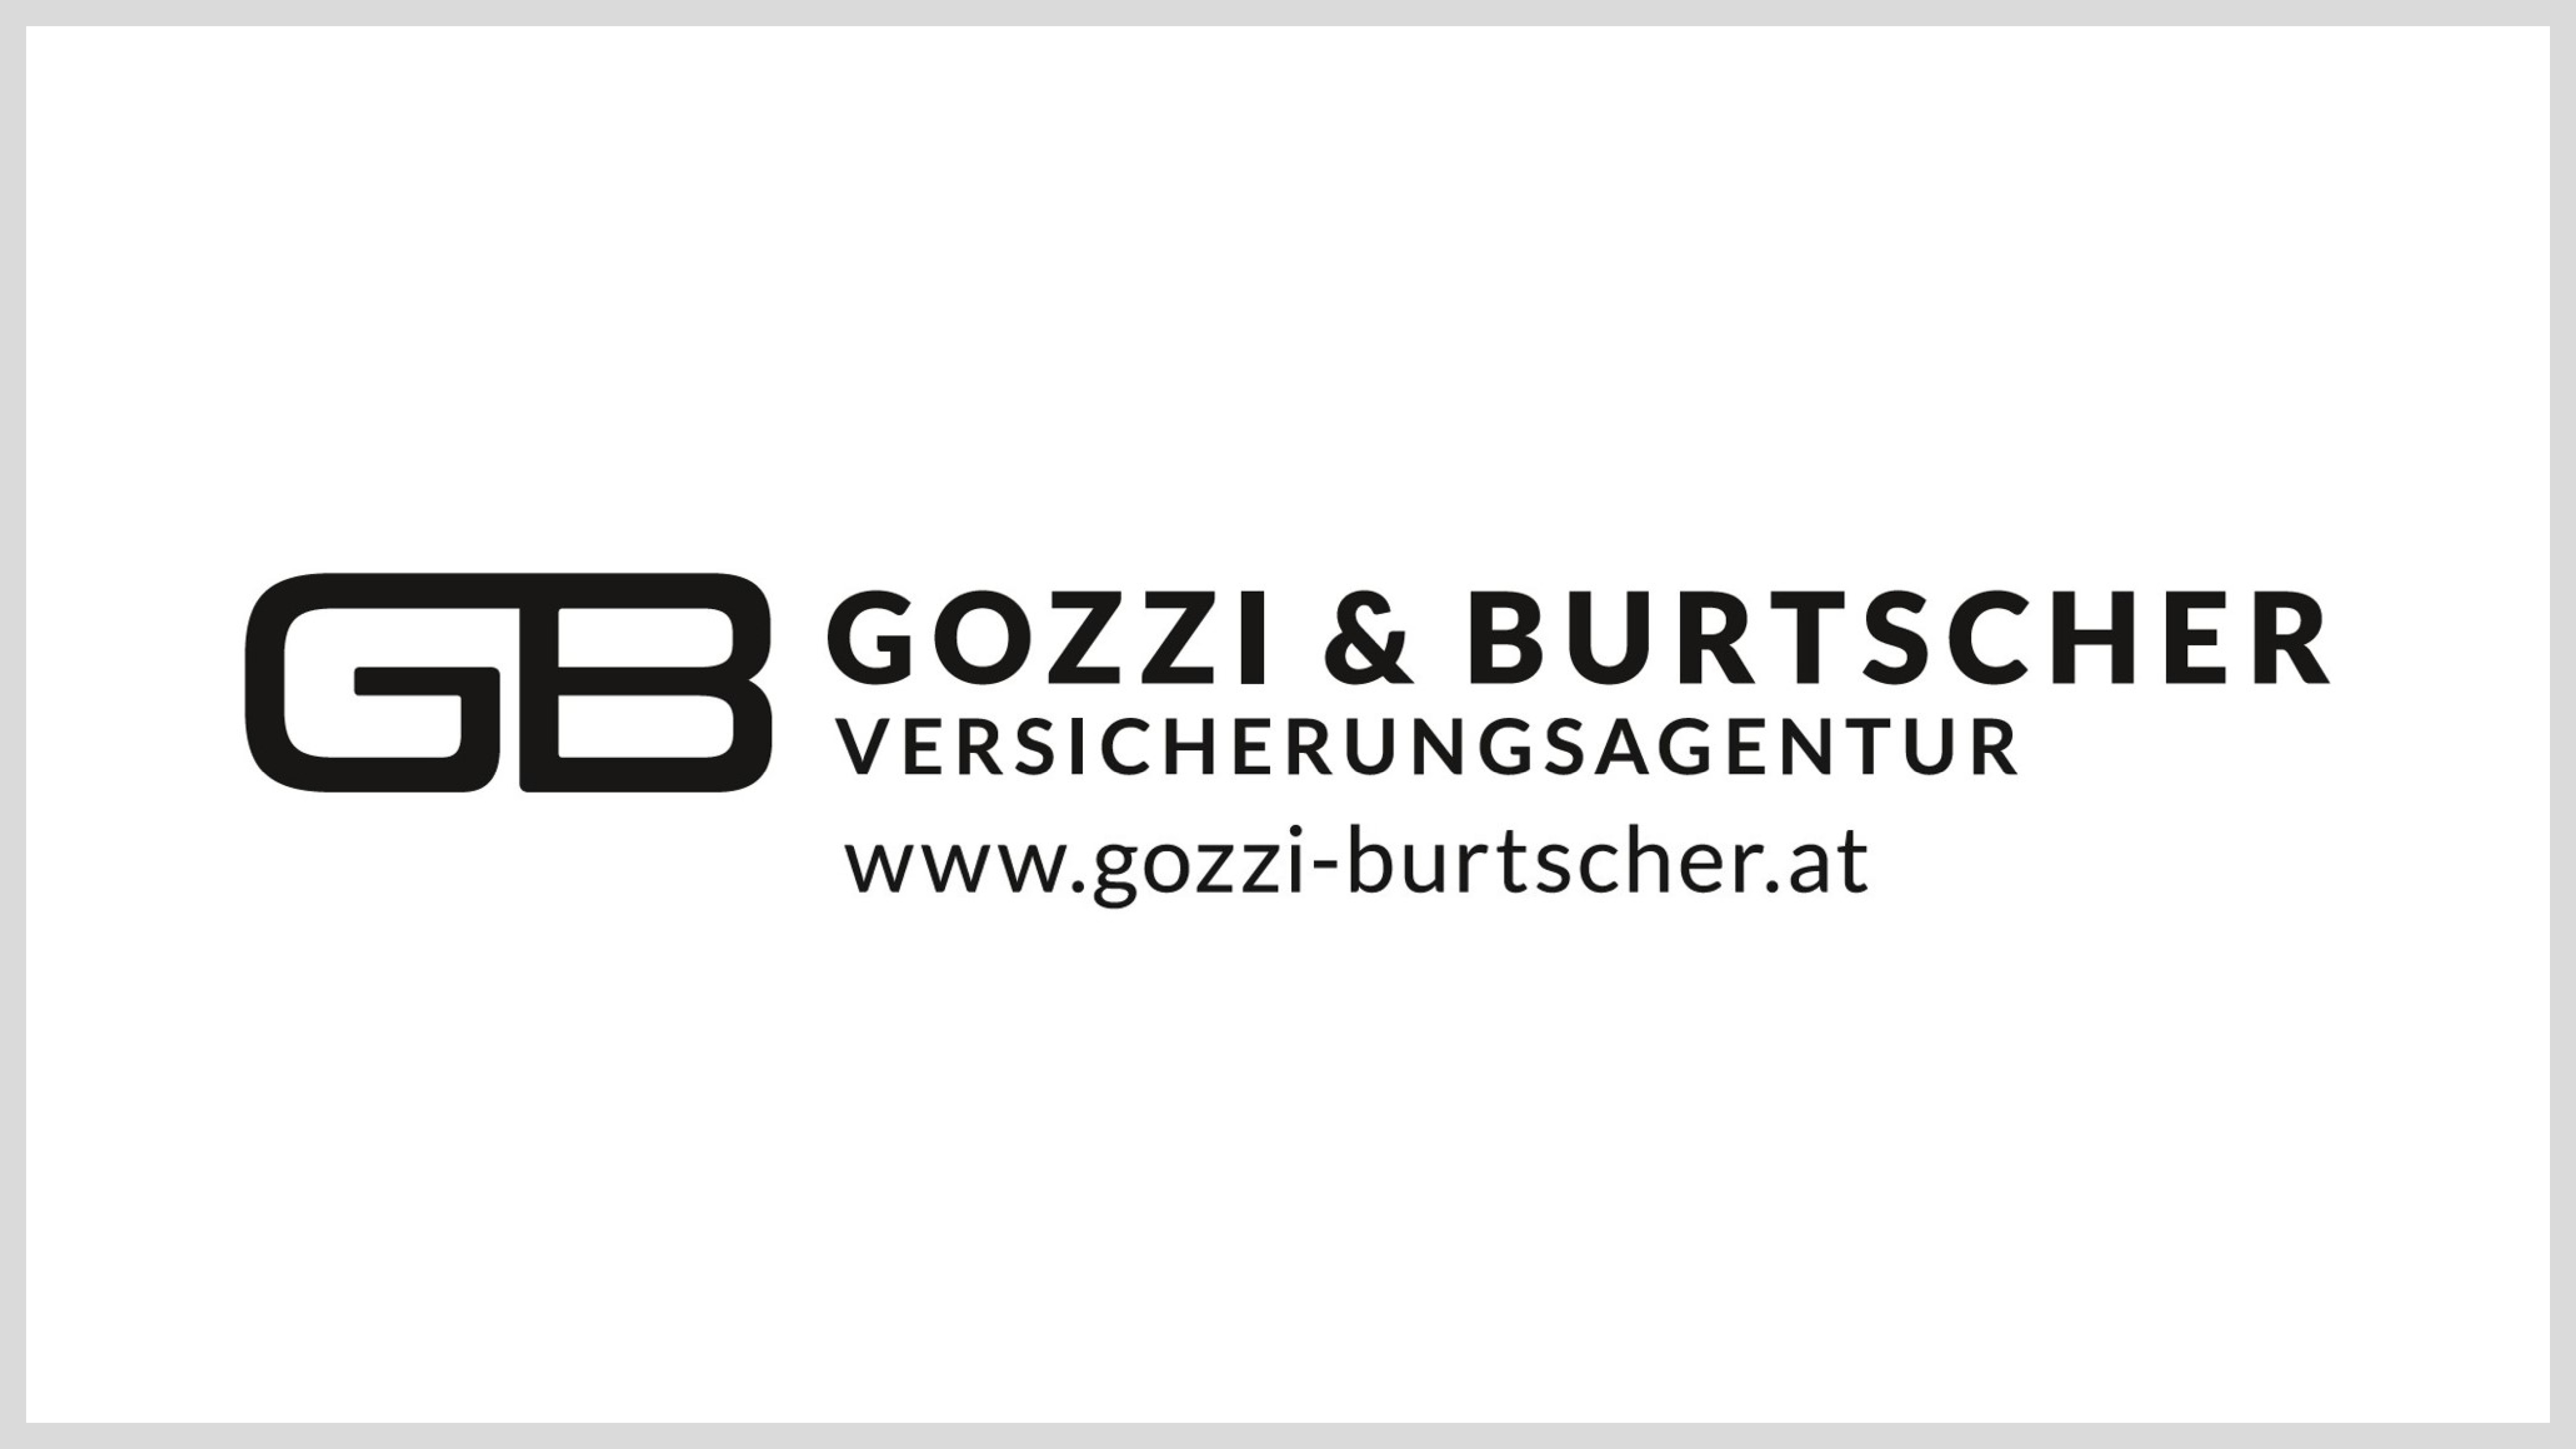 Gozzi & Burtscher Versicherung | Eur 300,-